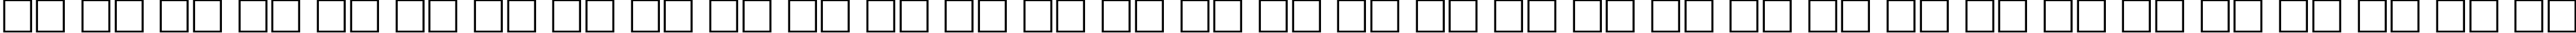 Пример написания русского алфавита шрифтом Antiqua-Bold90b